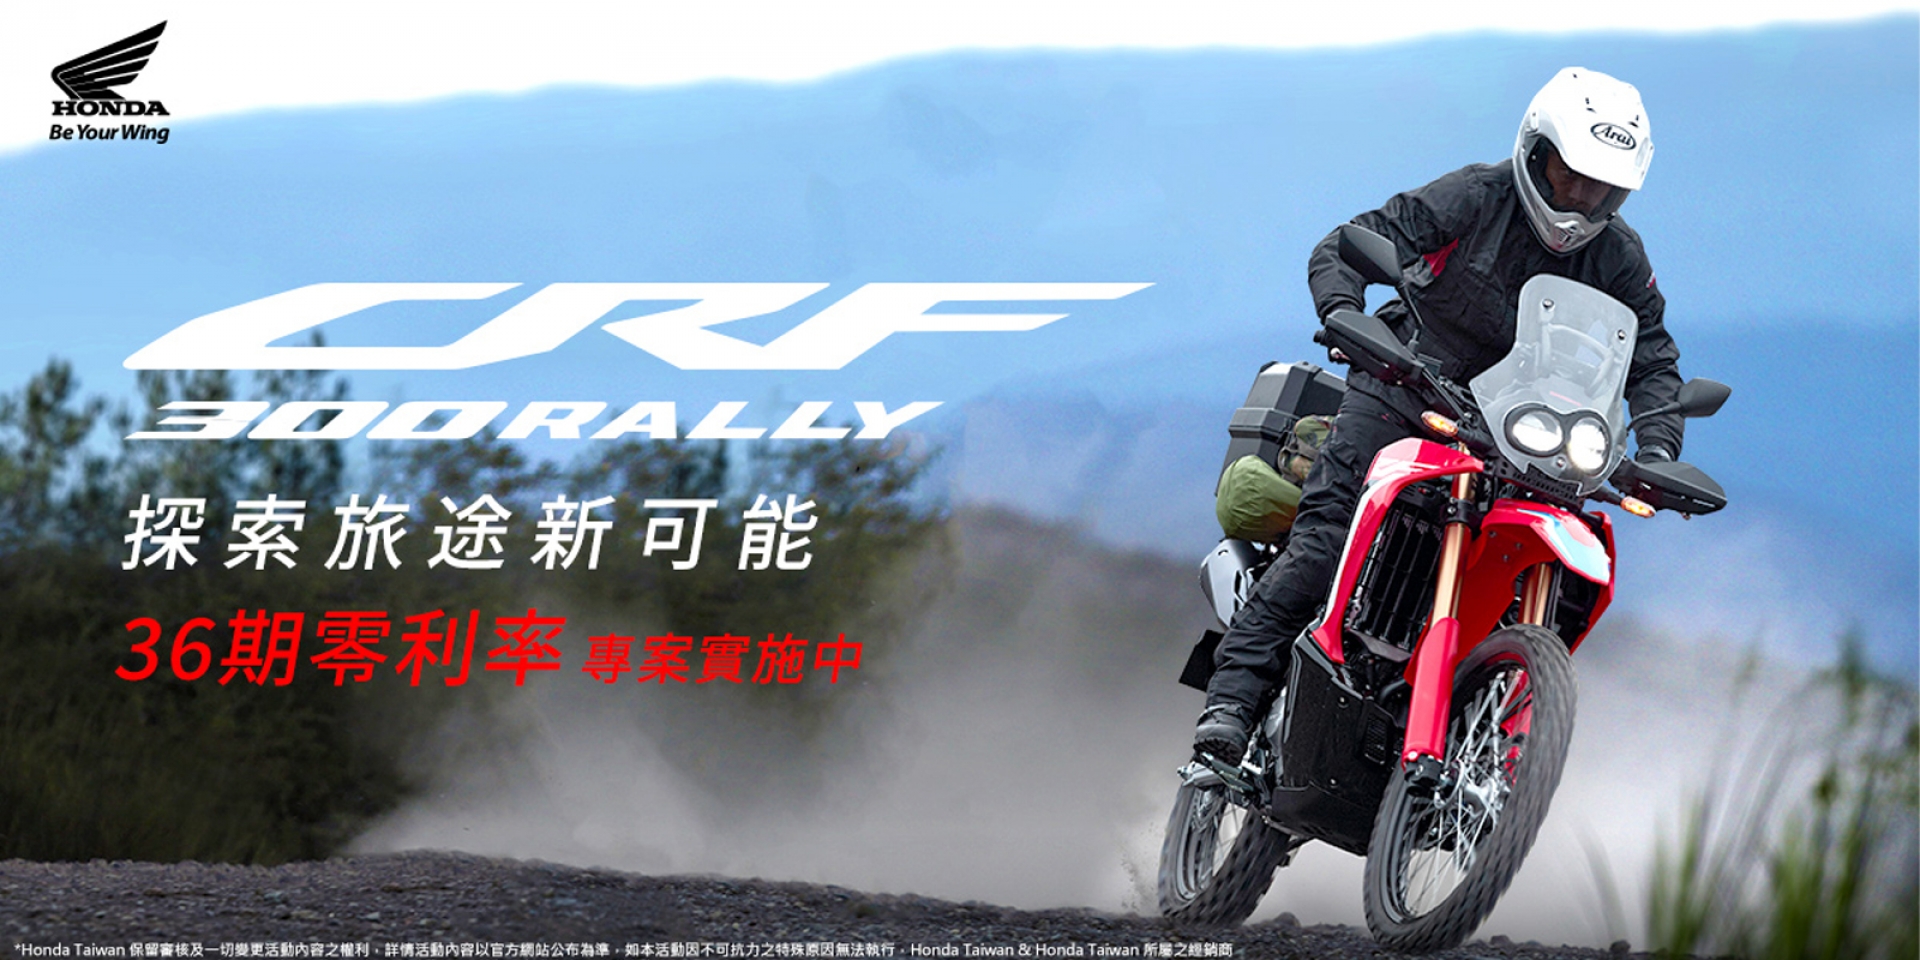 Honda Motorcycle CRF300 RALLY 探索旅途新可能 36期0利率實施中